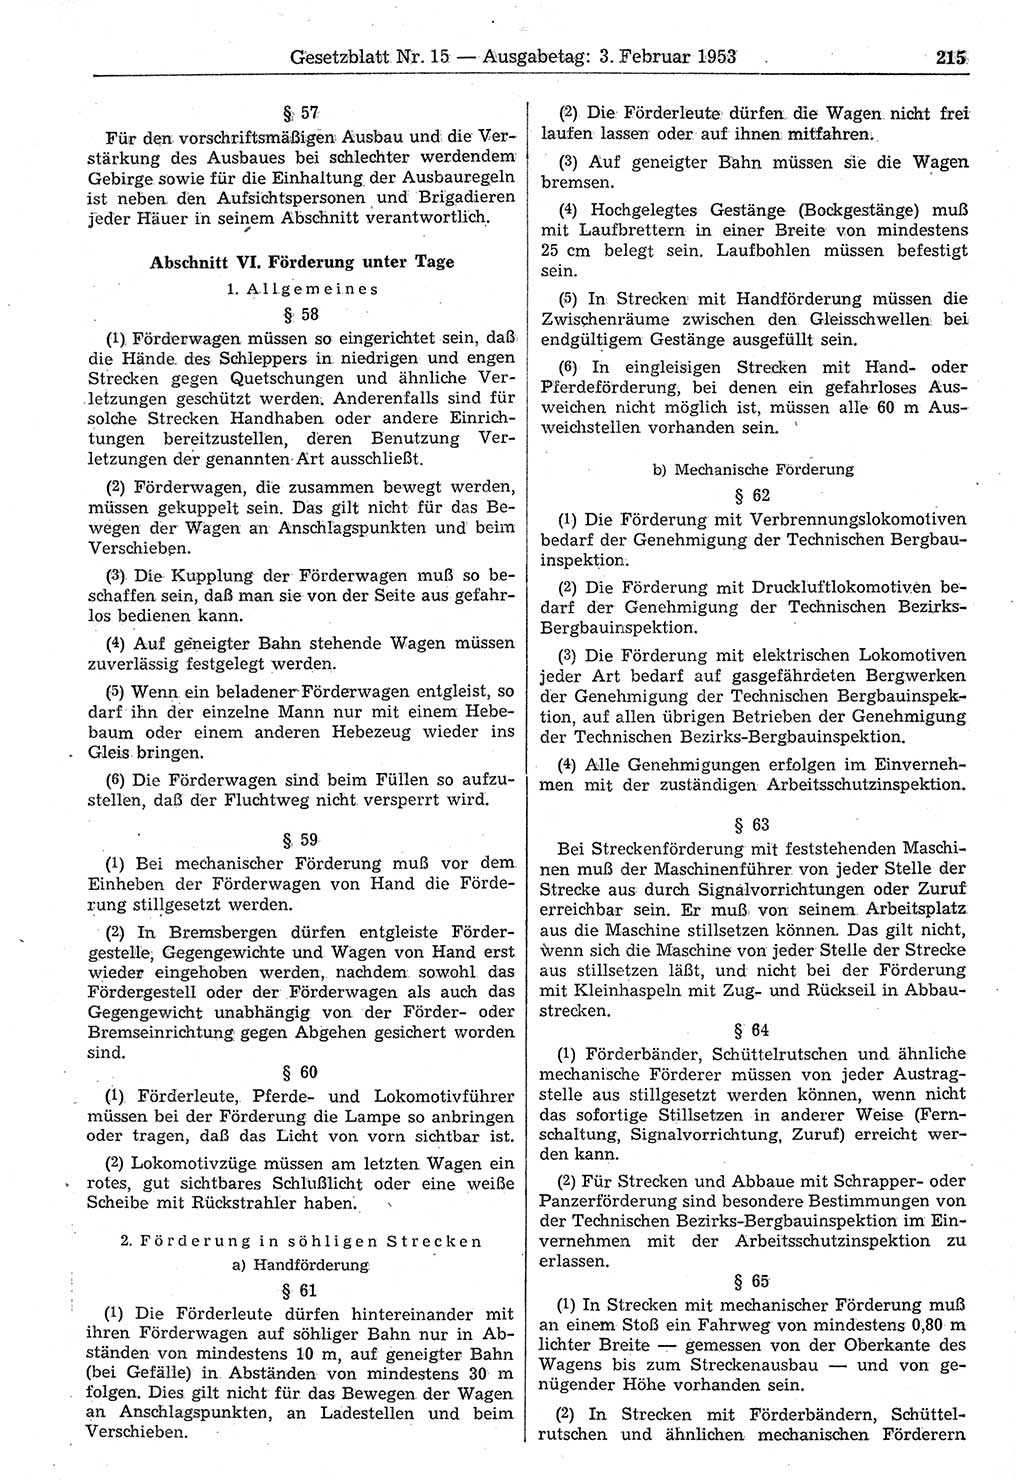 Gesetzblatt (GBl.) der Deutschen Demokratischen Republik (DDR) 1953, Seite 215 (GBl. DDR 1953, S. 215)